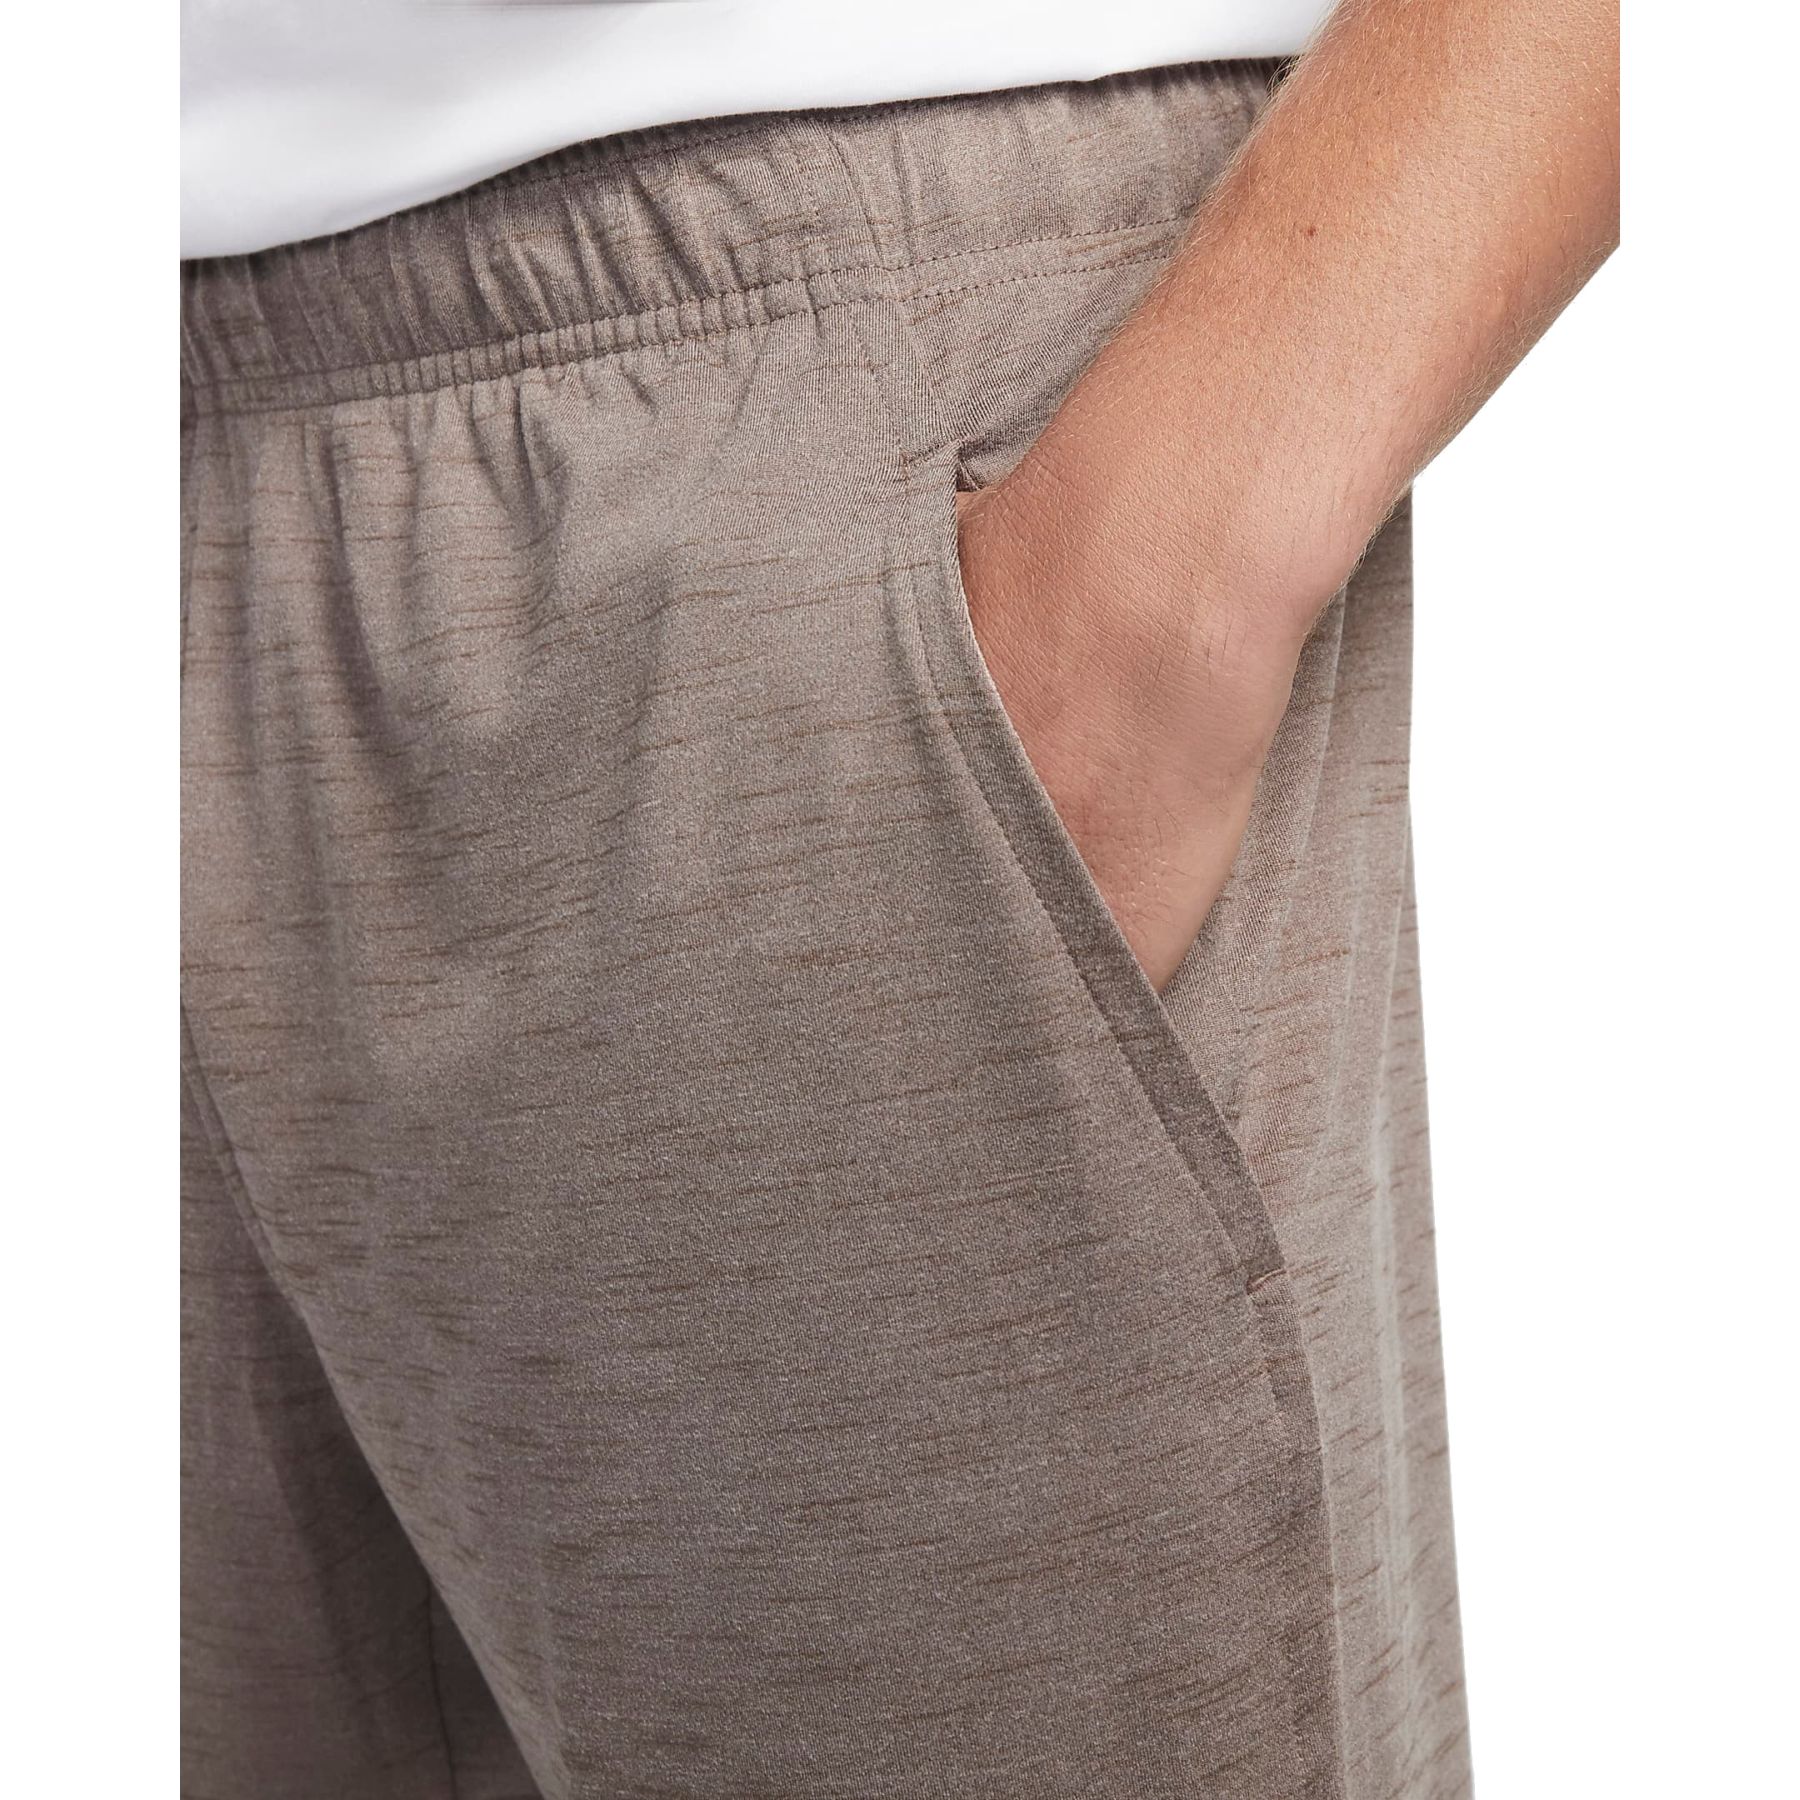 Nike Yoga Dri-Fit Pants Men - moon fossil/ironstone/black CZ2208